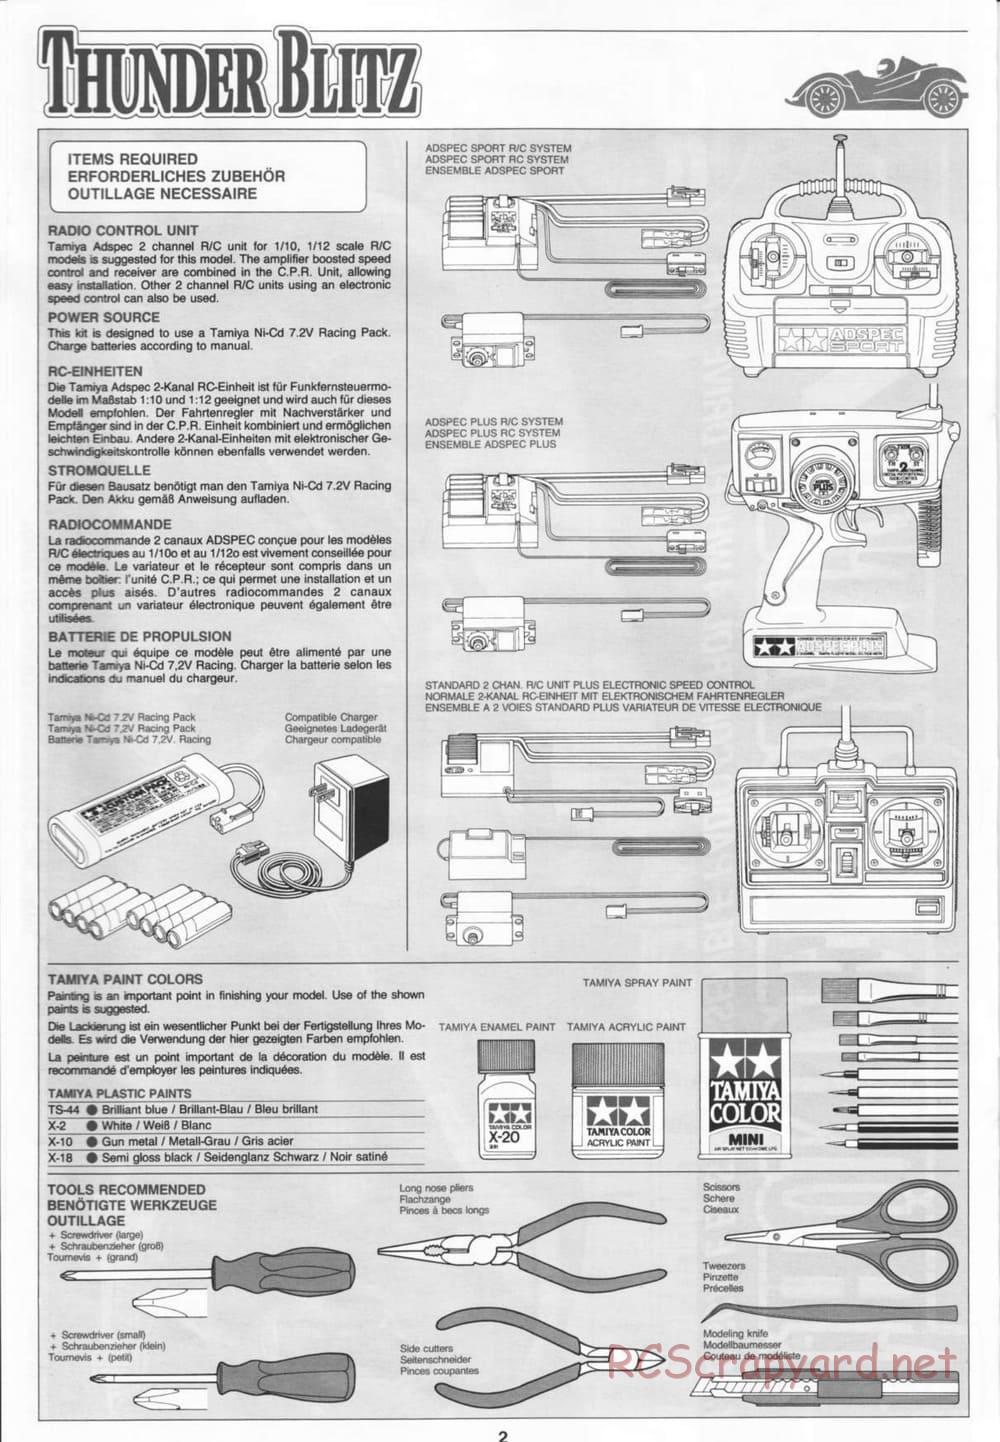 Tamiya - Thunder Blitz - Boy's 4WD Chassis - Manual - Page 2